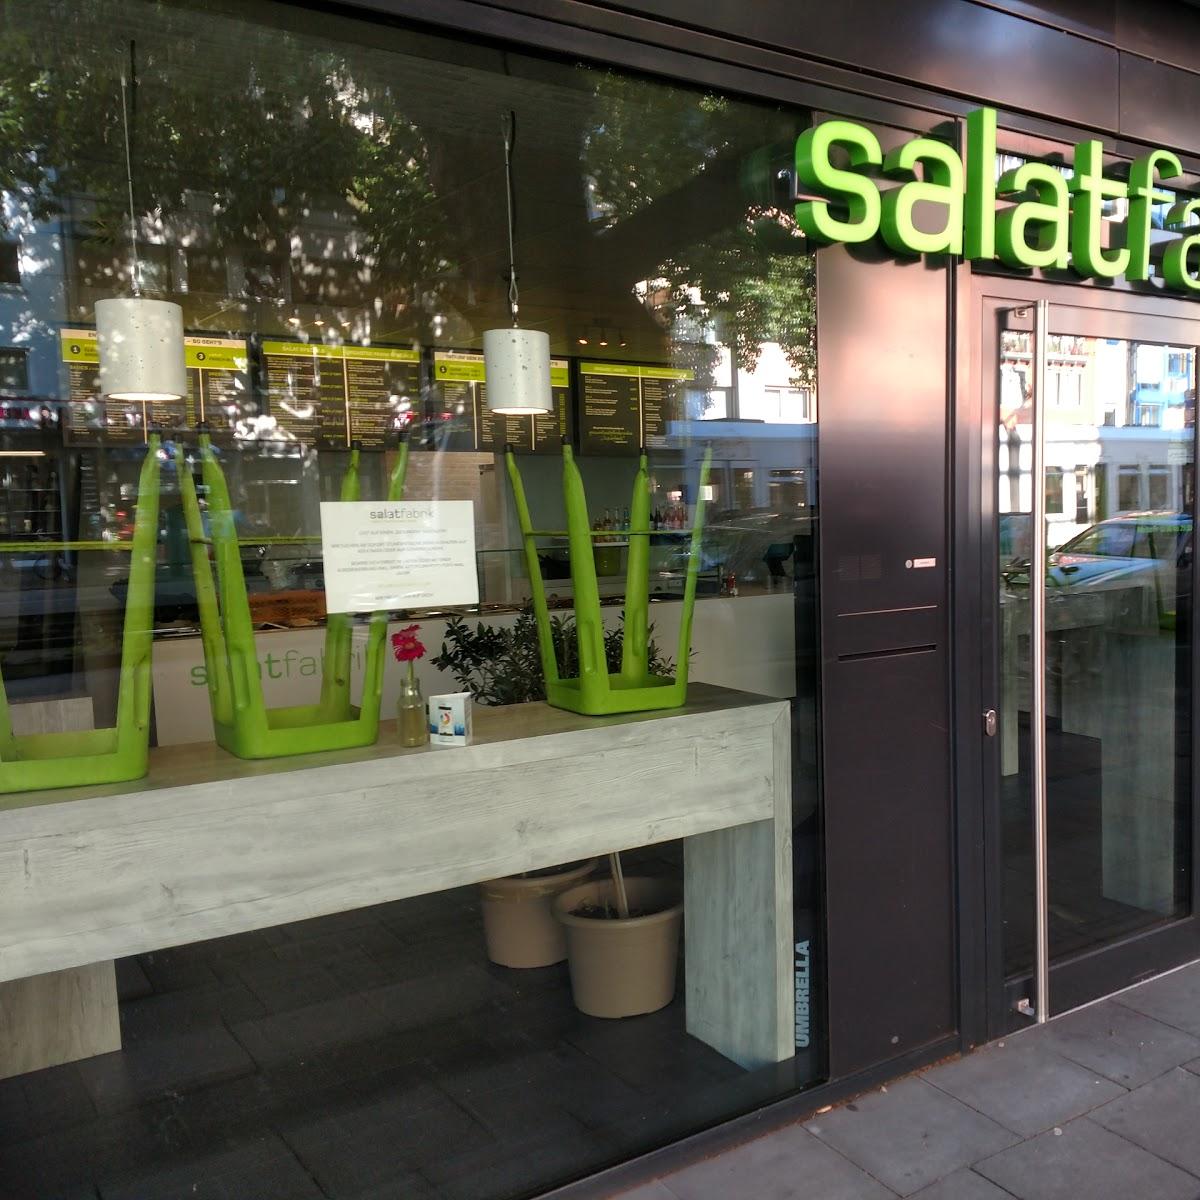 Restaurant "Salatfabrik" in Köln